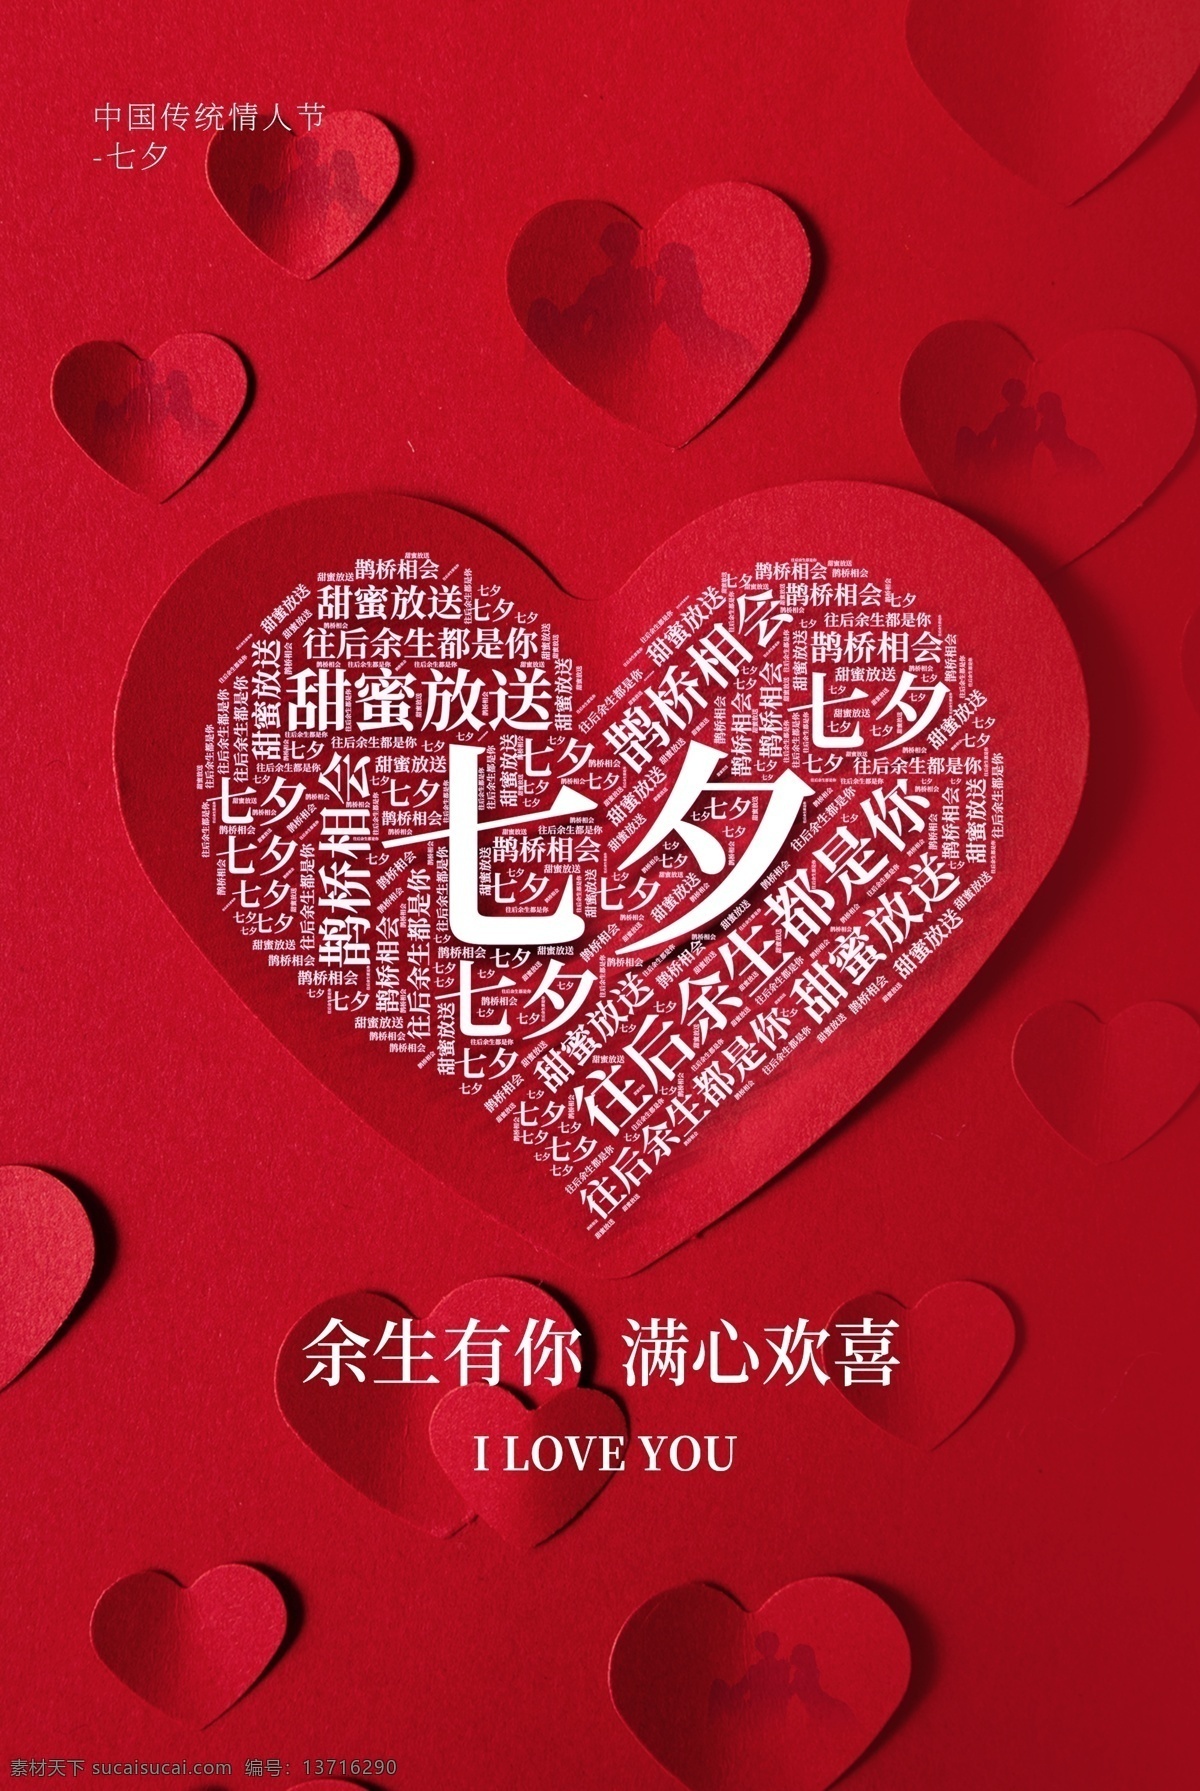 七夕 节日 传统 活动 宣传海报 素材图片 宣传 海报 传统节日